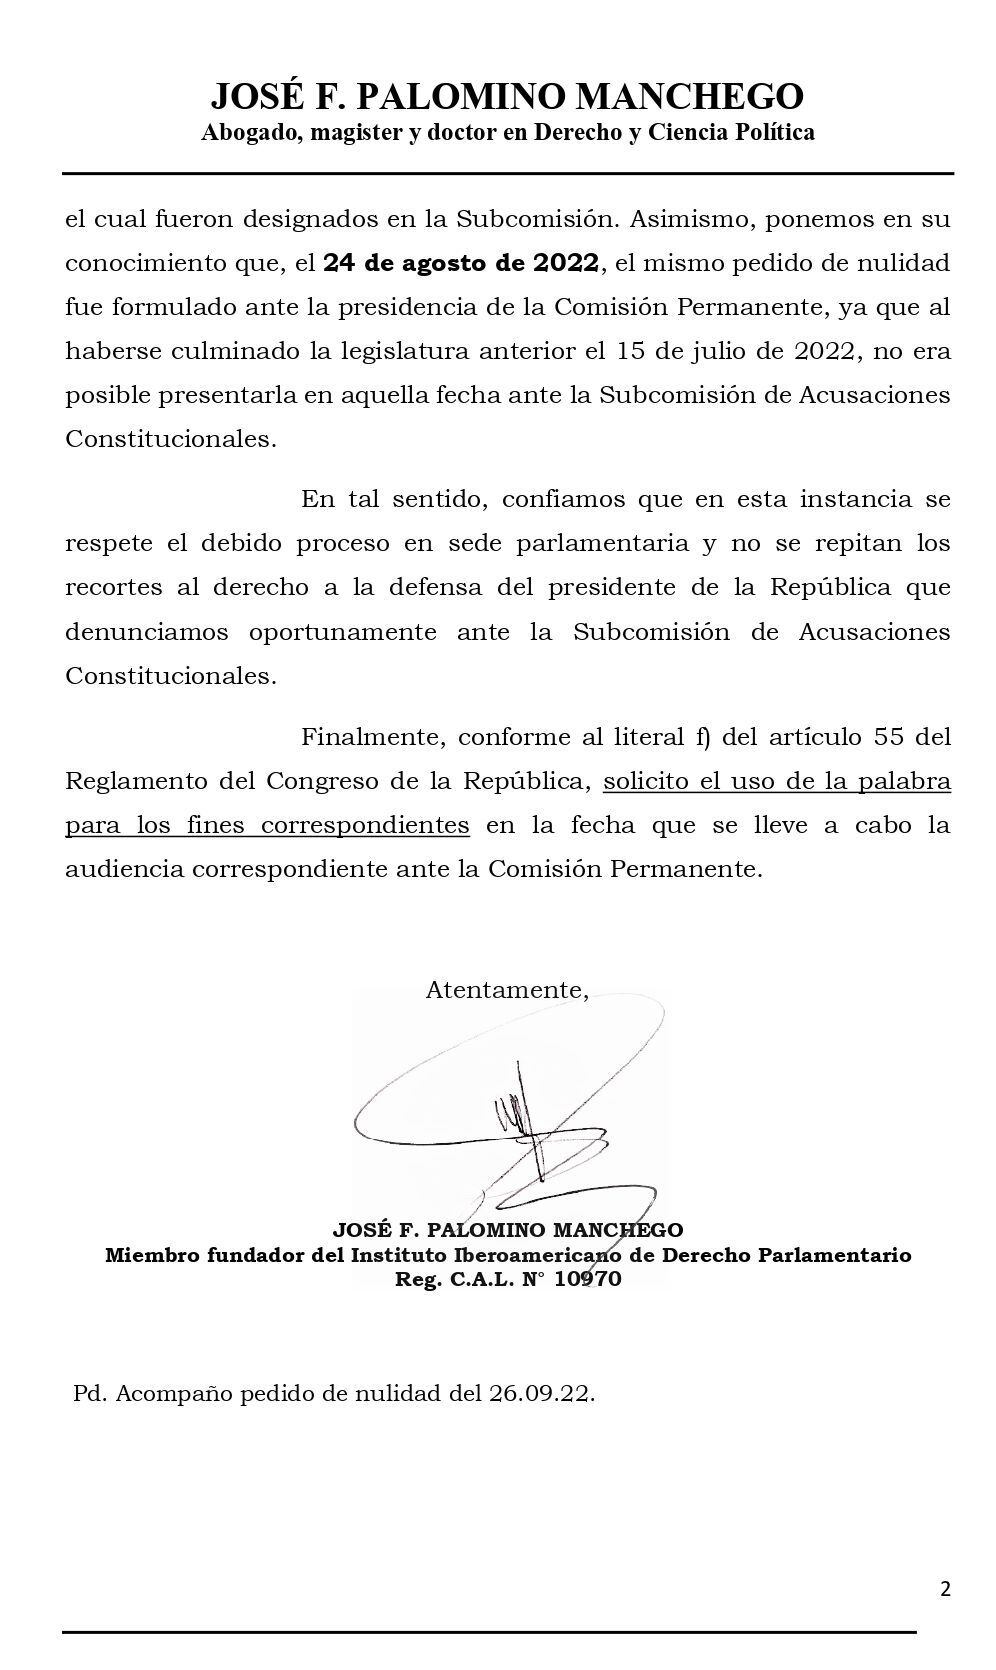 Documento remitido por el abogado de Pedro Castillo al presidente del Congreso.